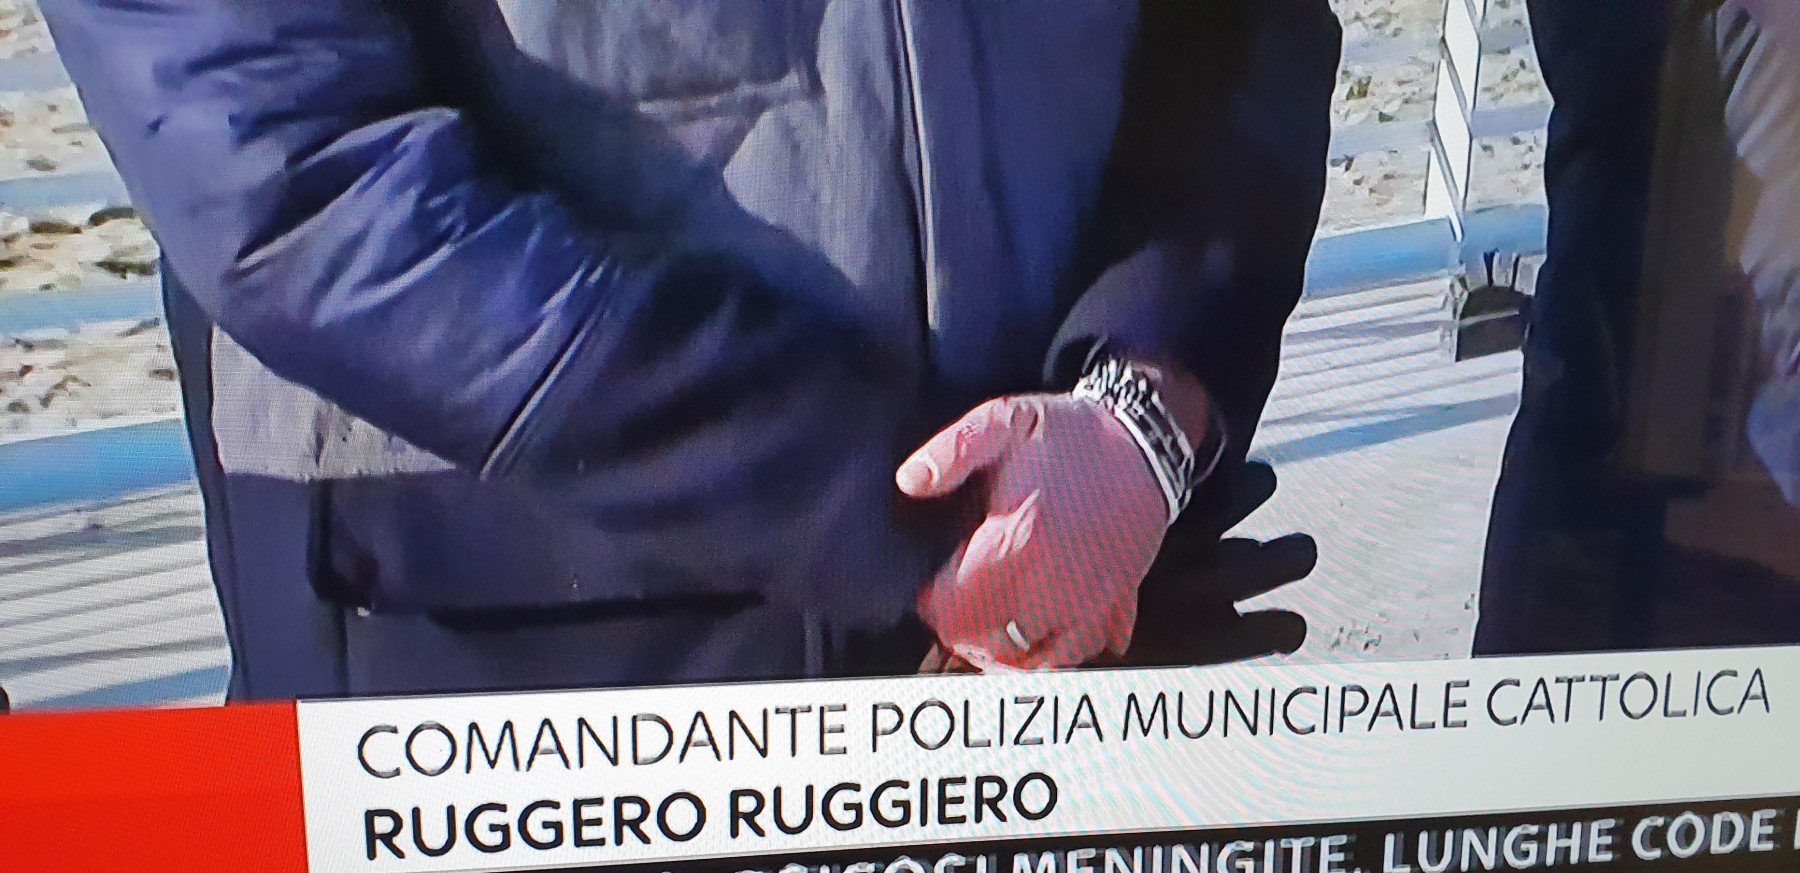 Nomi Strani - Ruggero Ruggiero